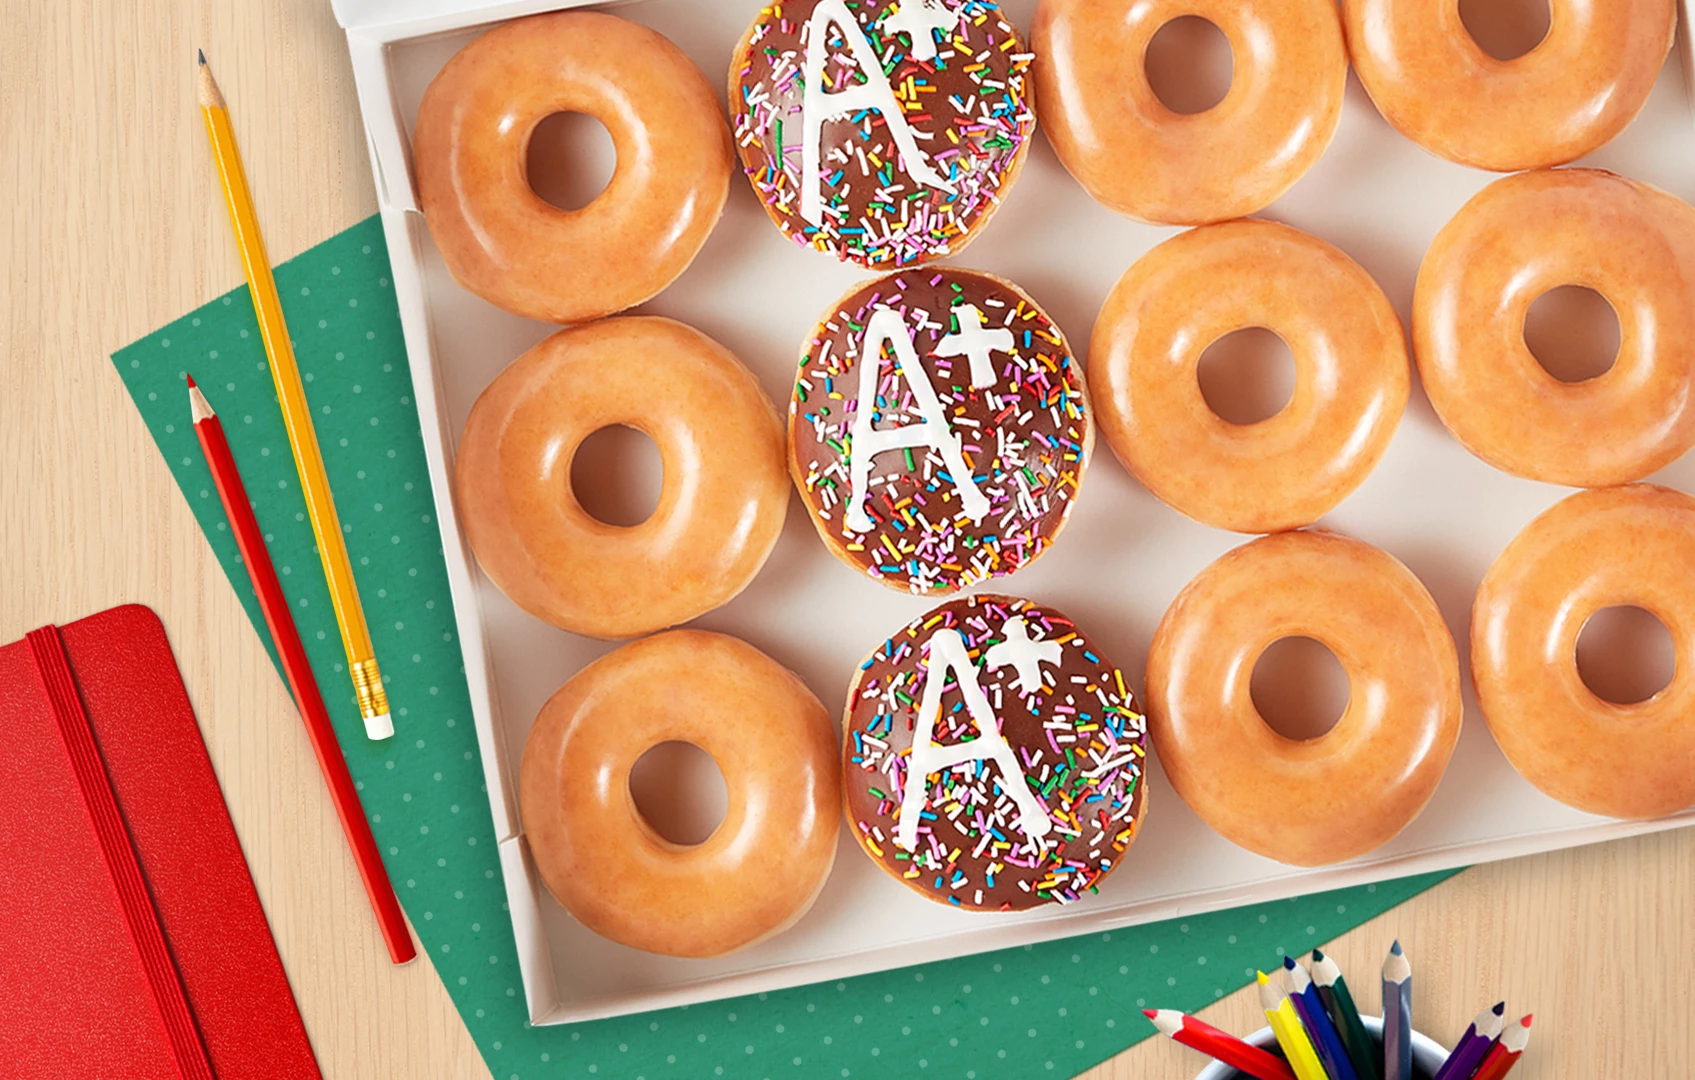 Get a Free Dozen Doughnuts at Krispy Kreme On Their Birthday